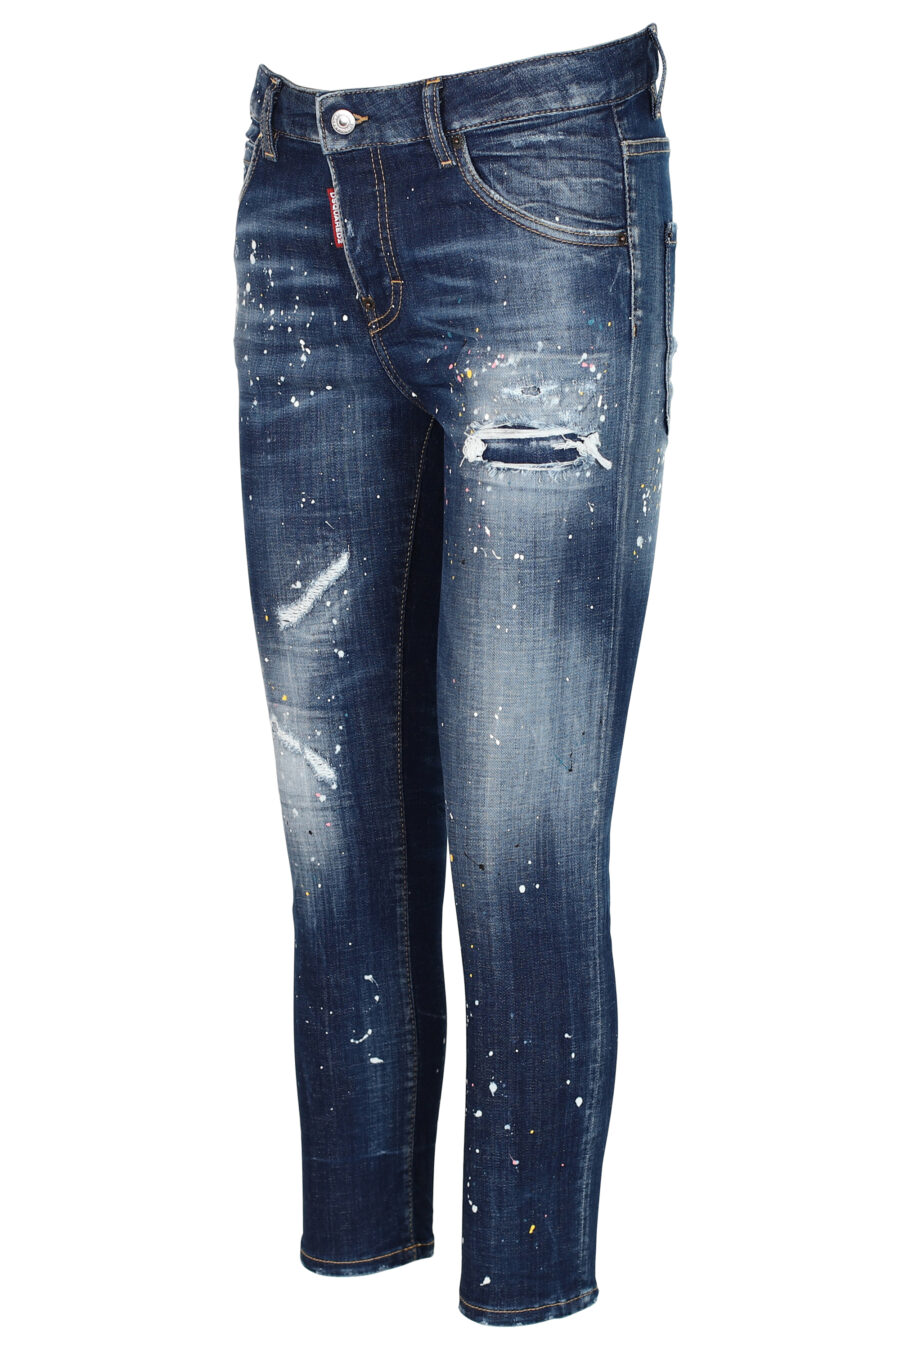 Pantalón vaquero "Cool girl cropped jean" azul desgastado con rotos - 8052134942512 2